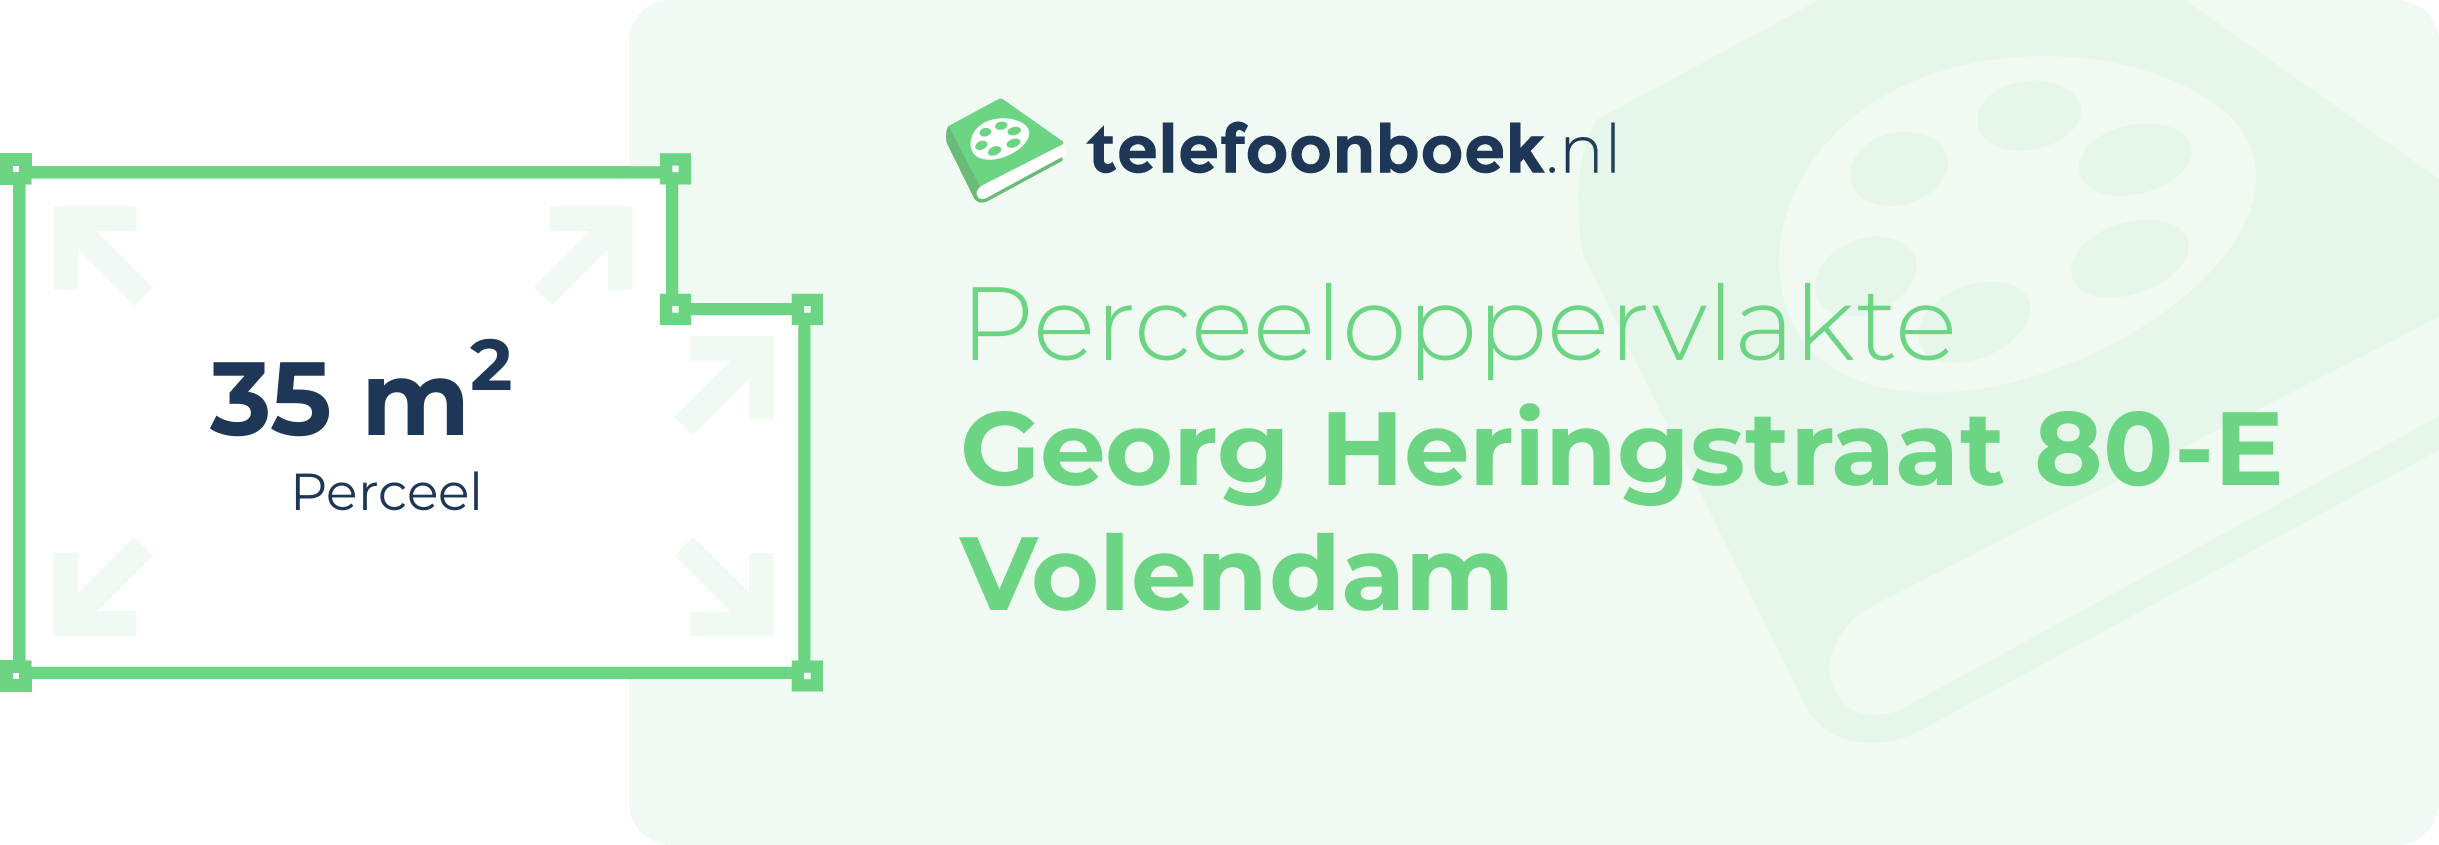 Perceeloppervlakte Georg Heringstraat 80-E Volendam